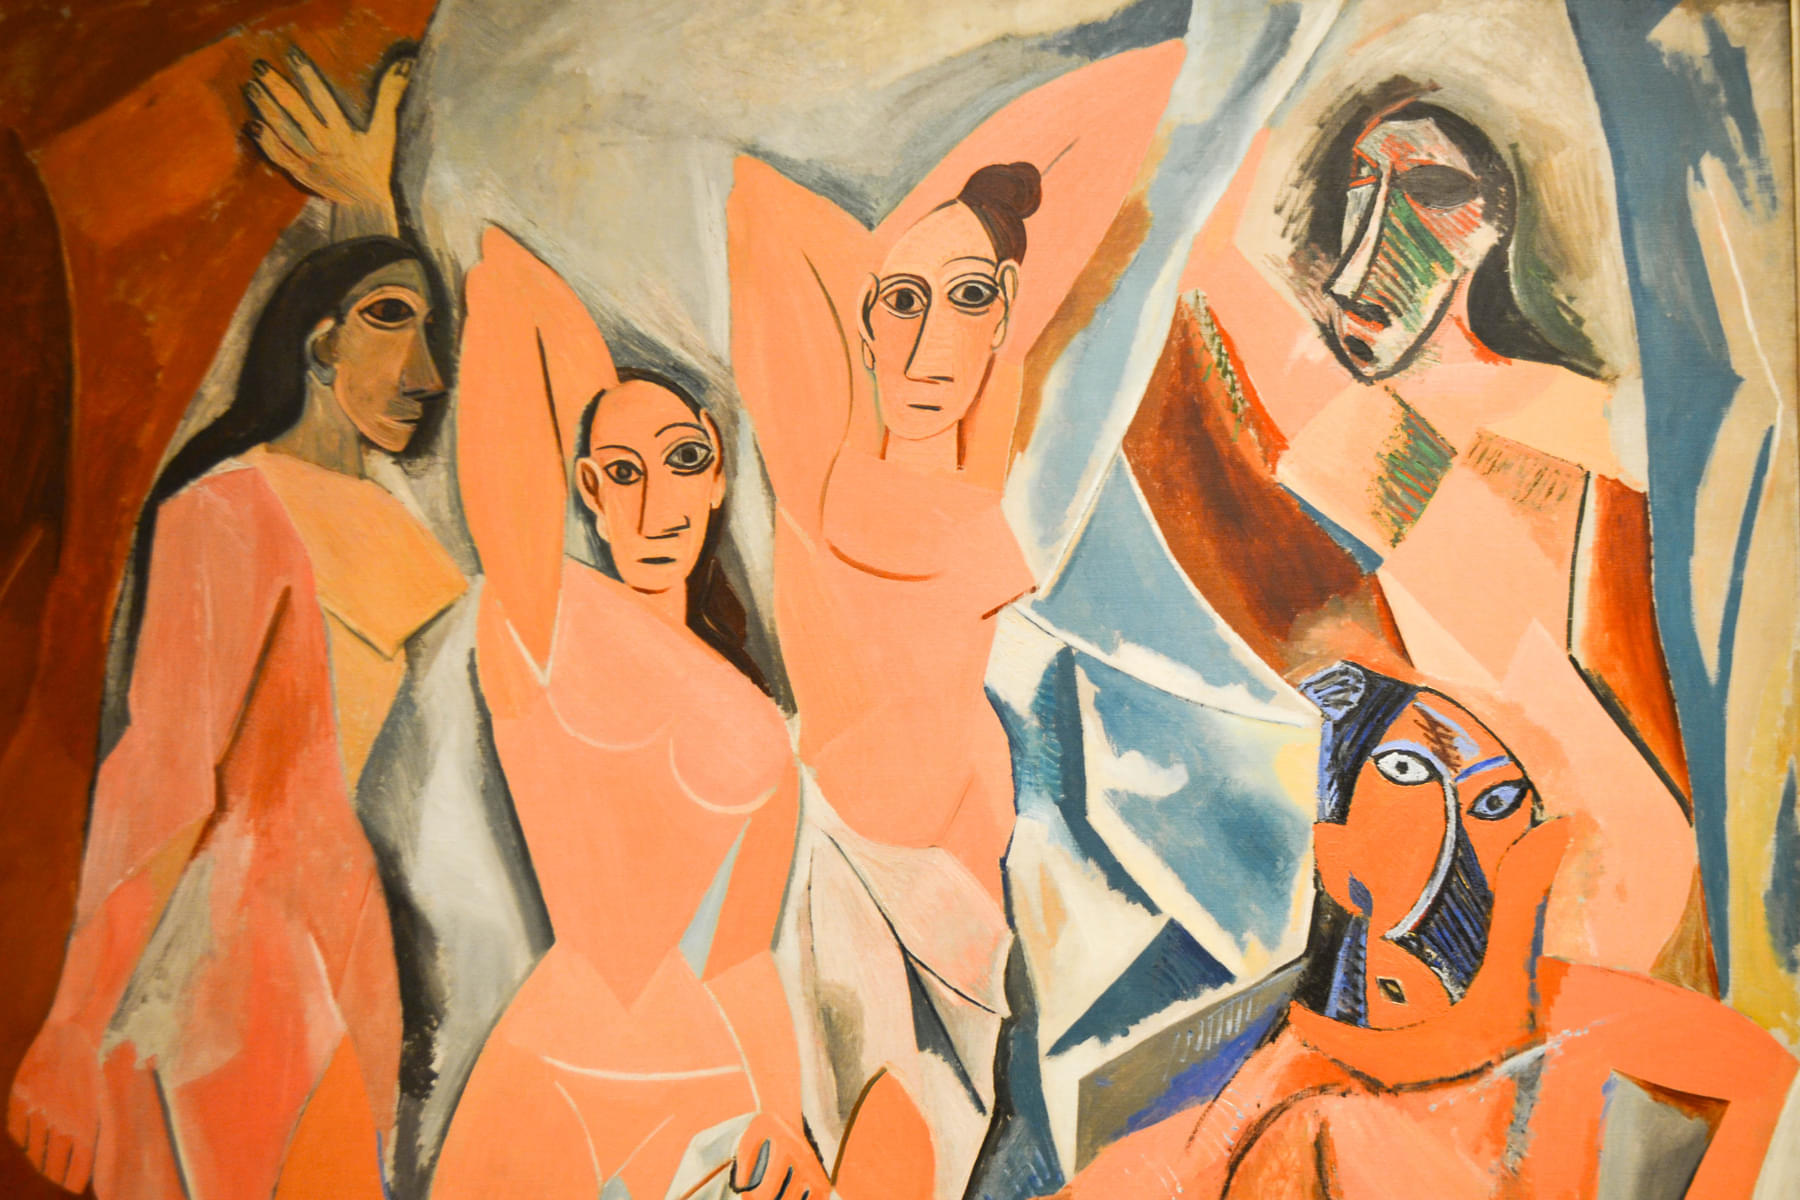 Pablo Picasso, Les Demoiselles d’Avignon (1907)